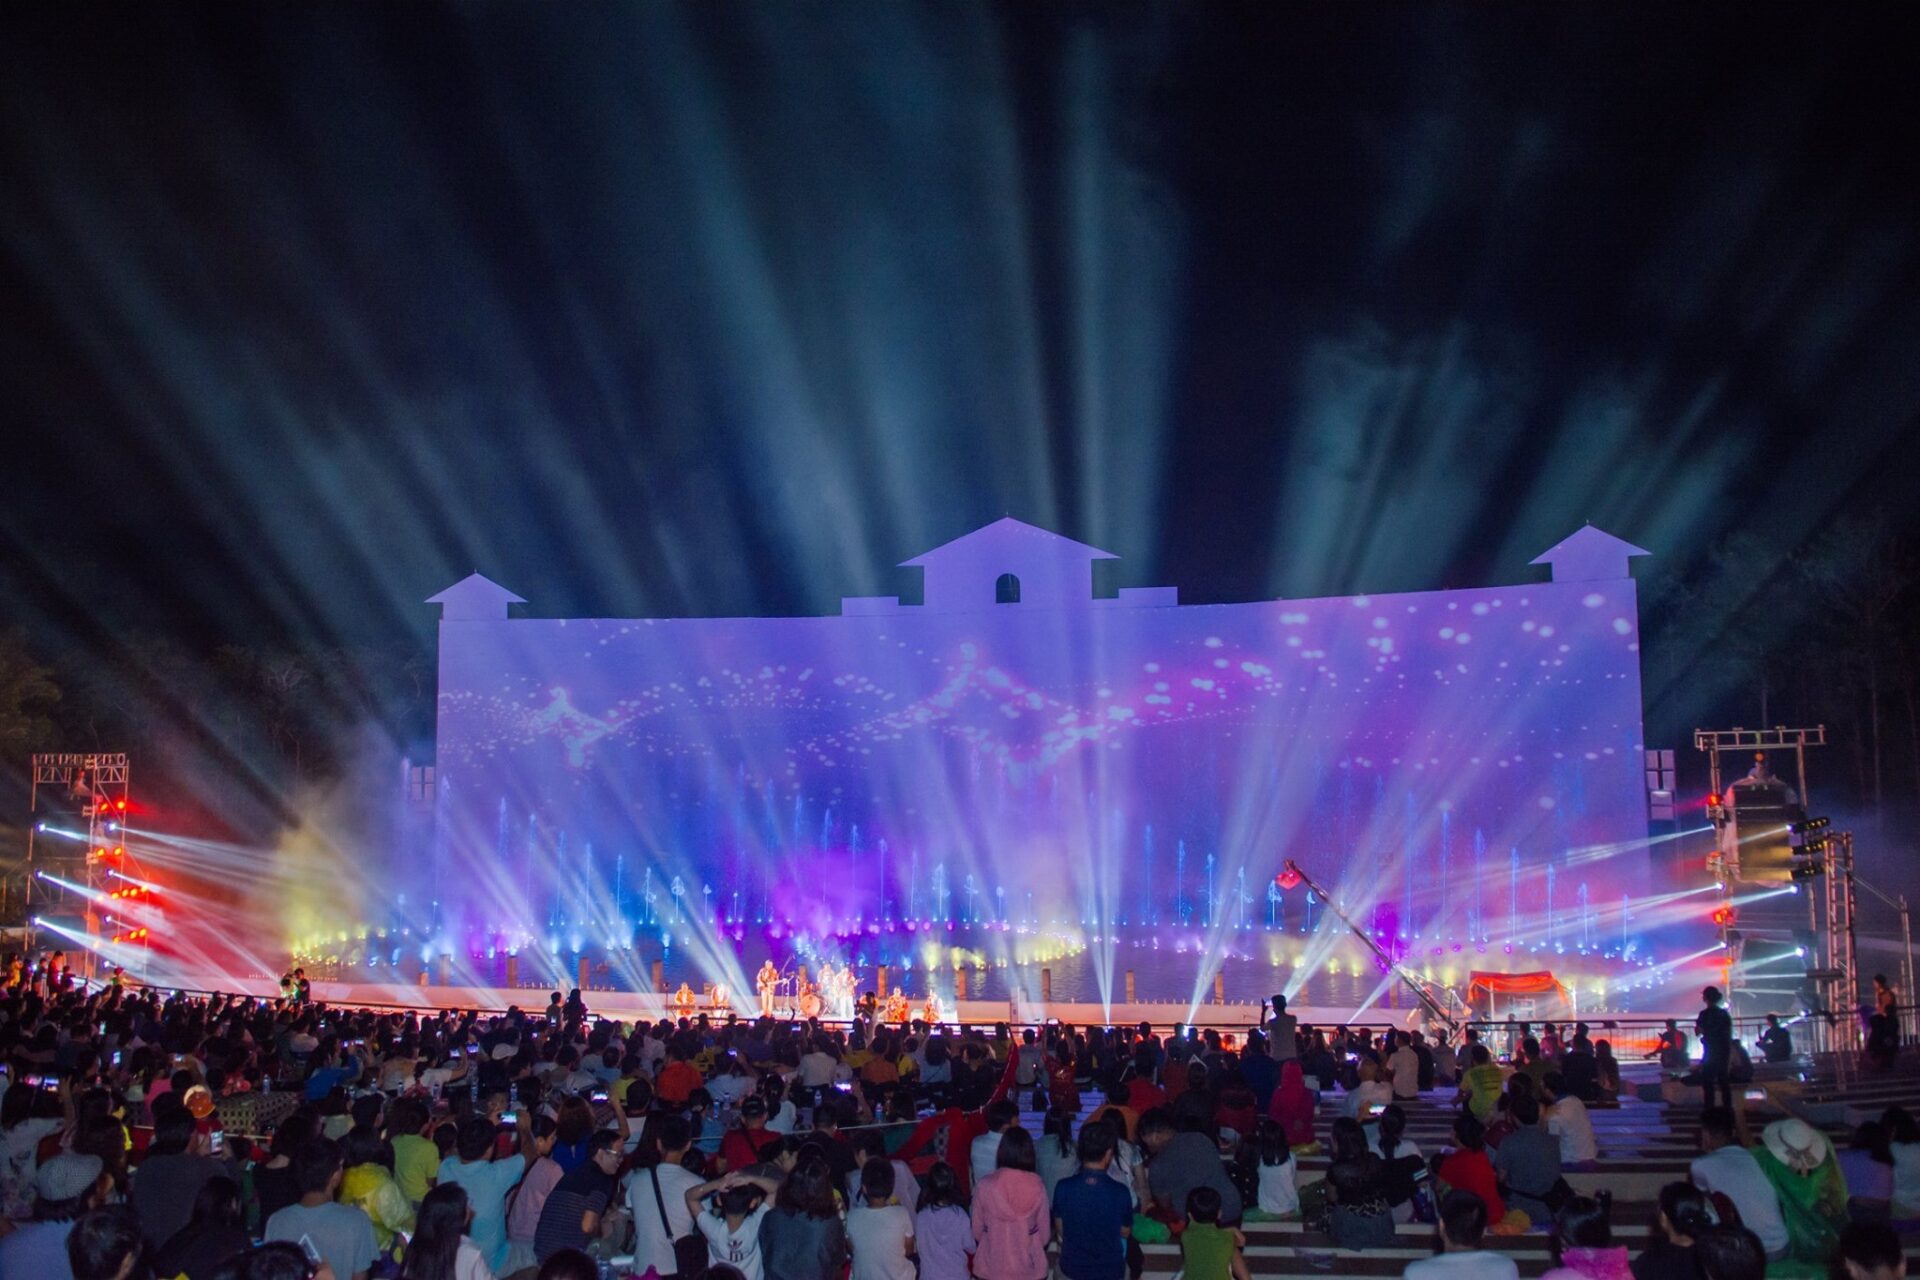 Hồ Mây Grand Show là chương trình nhạc nước quy mô lớn bậc nhất Việt Nam